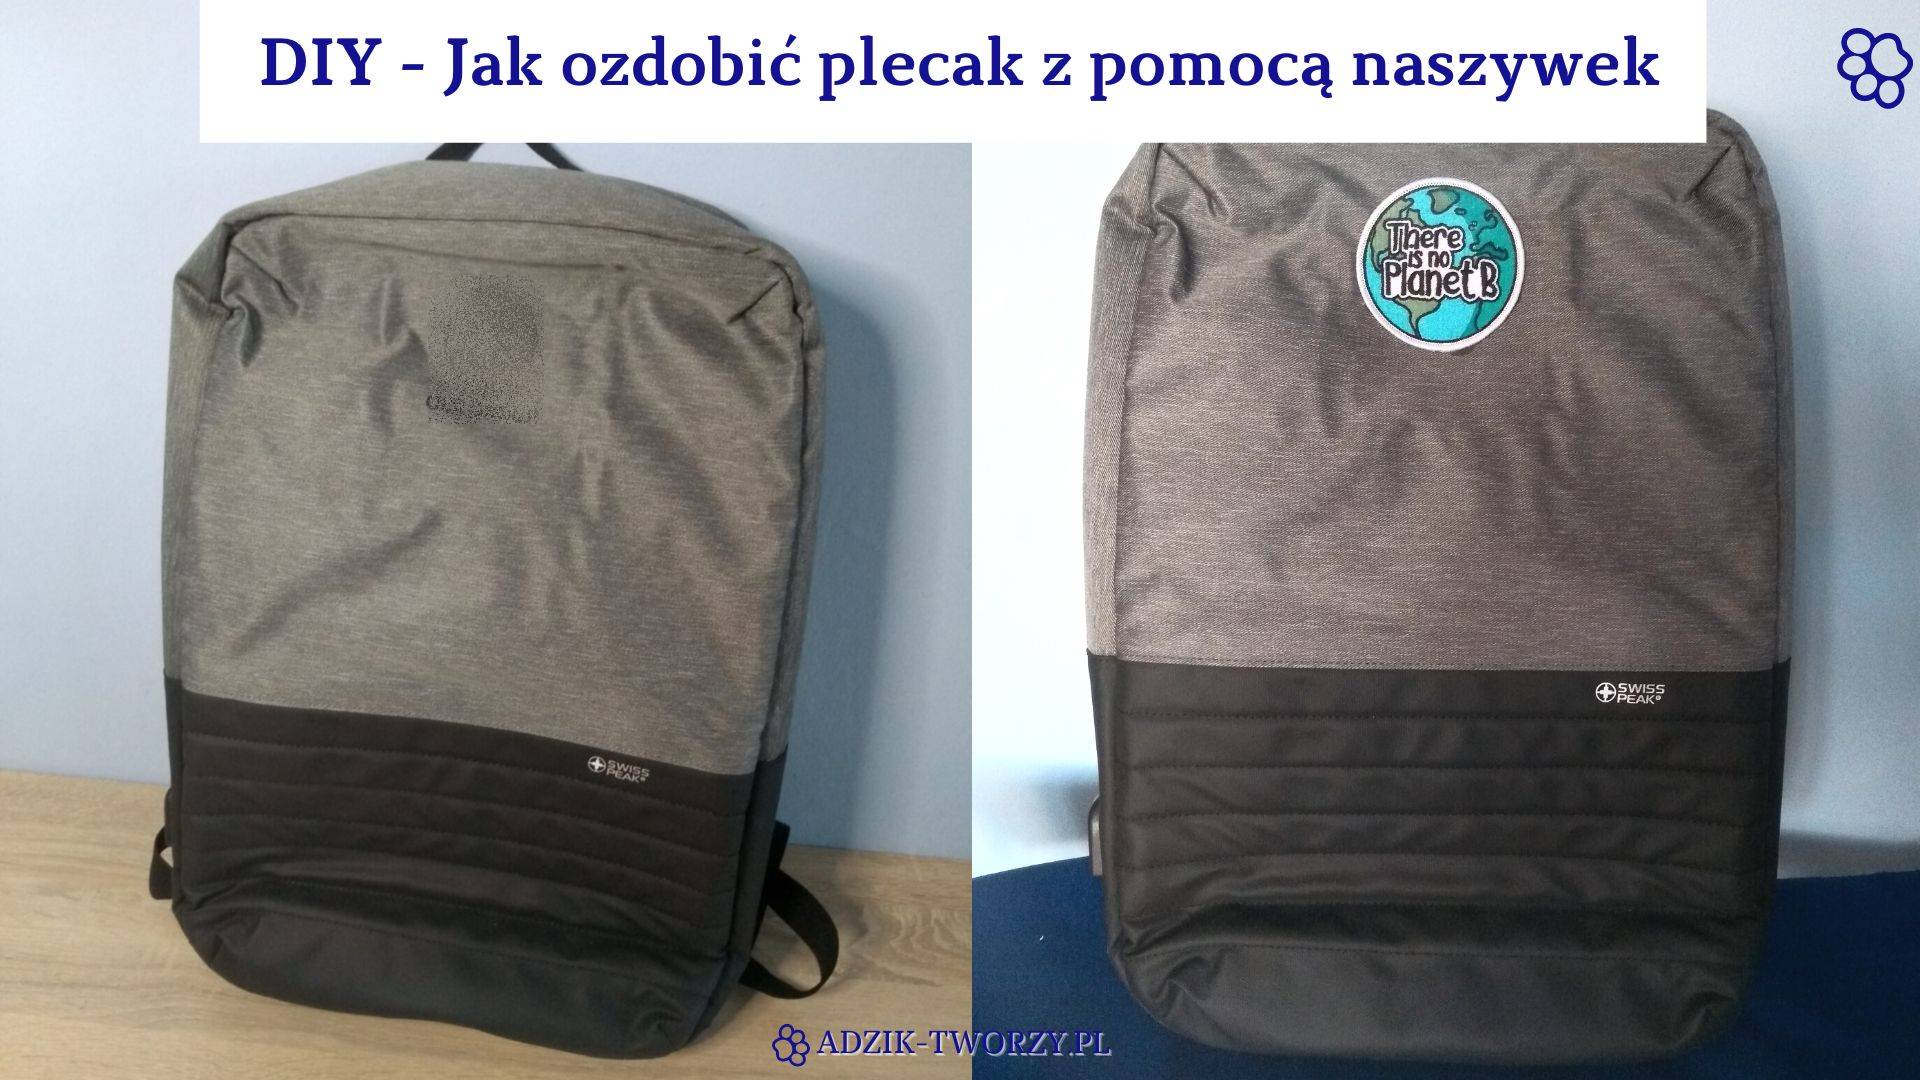 Jak ozdobić plecak naszywkami DIY - Adzik-tworzy.pl